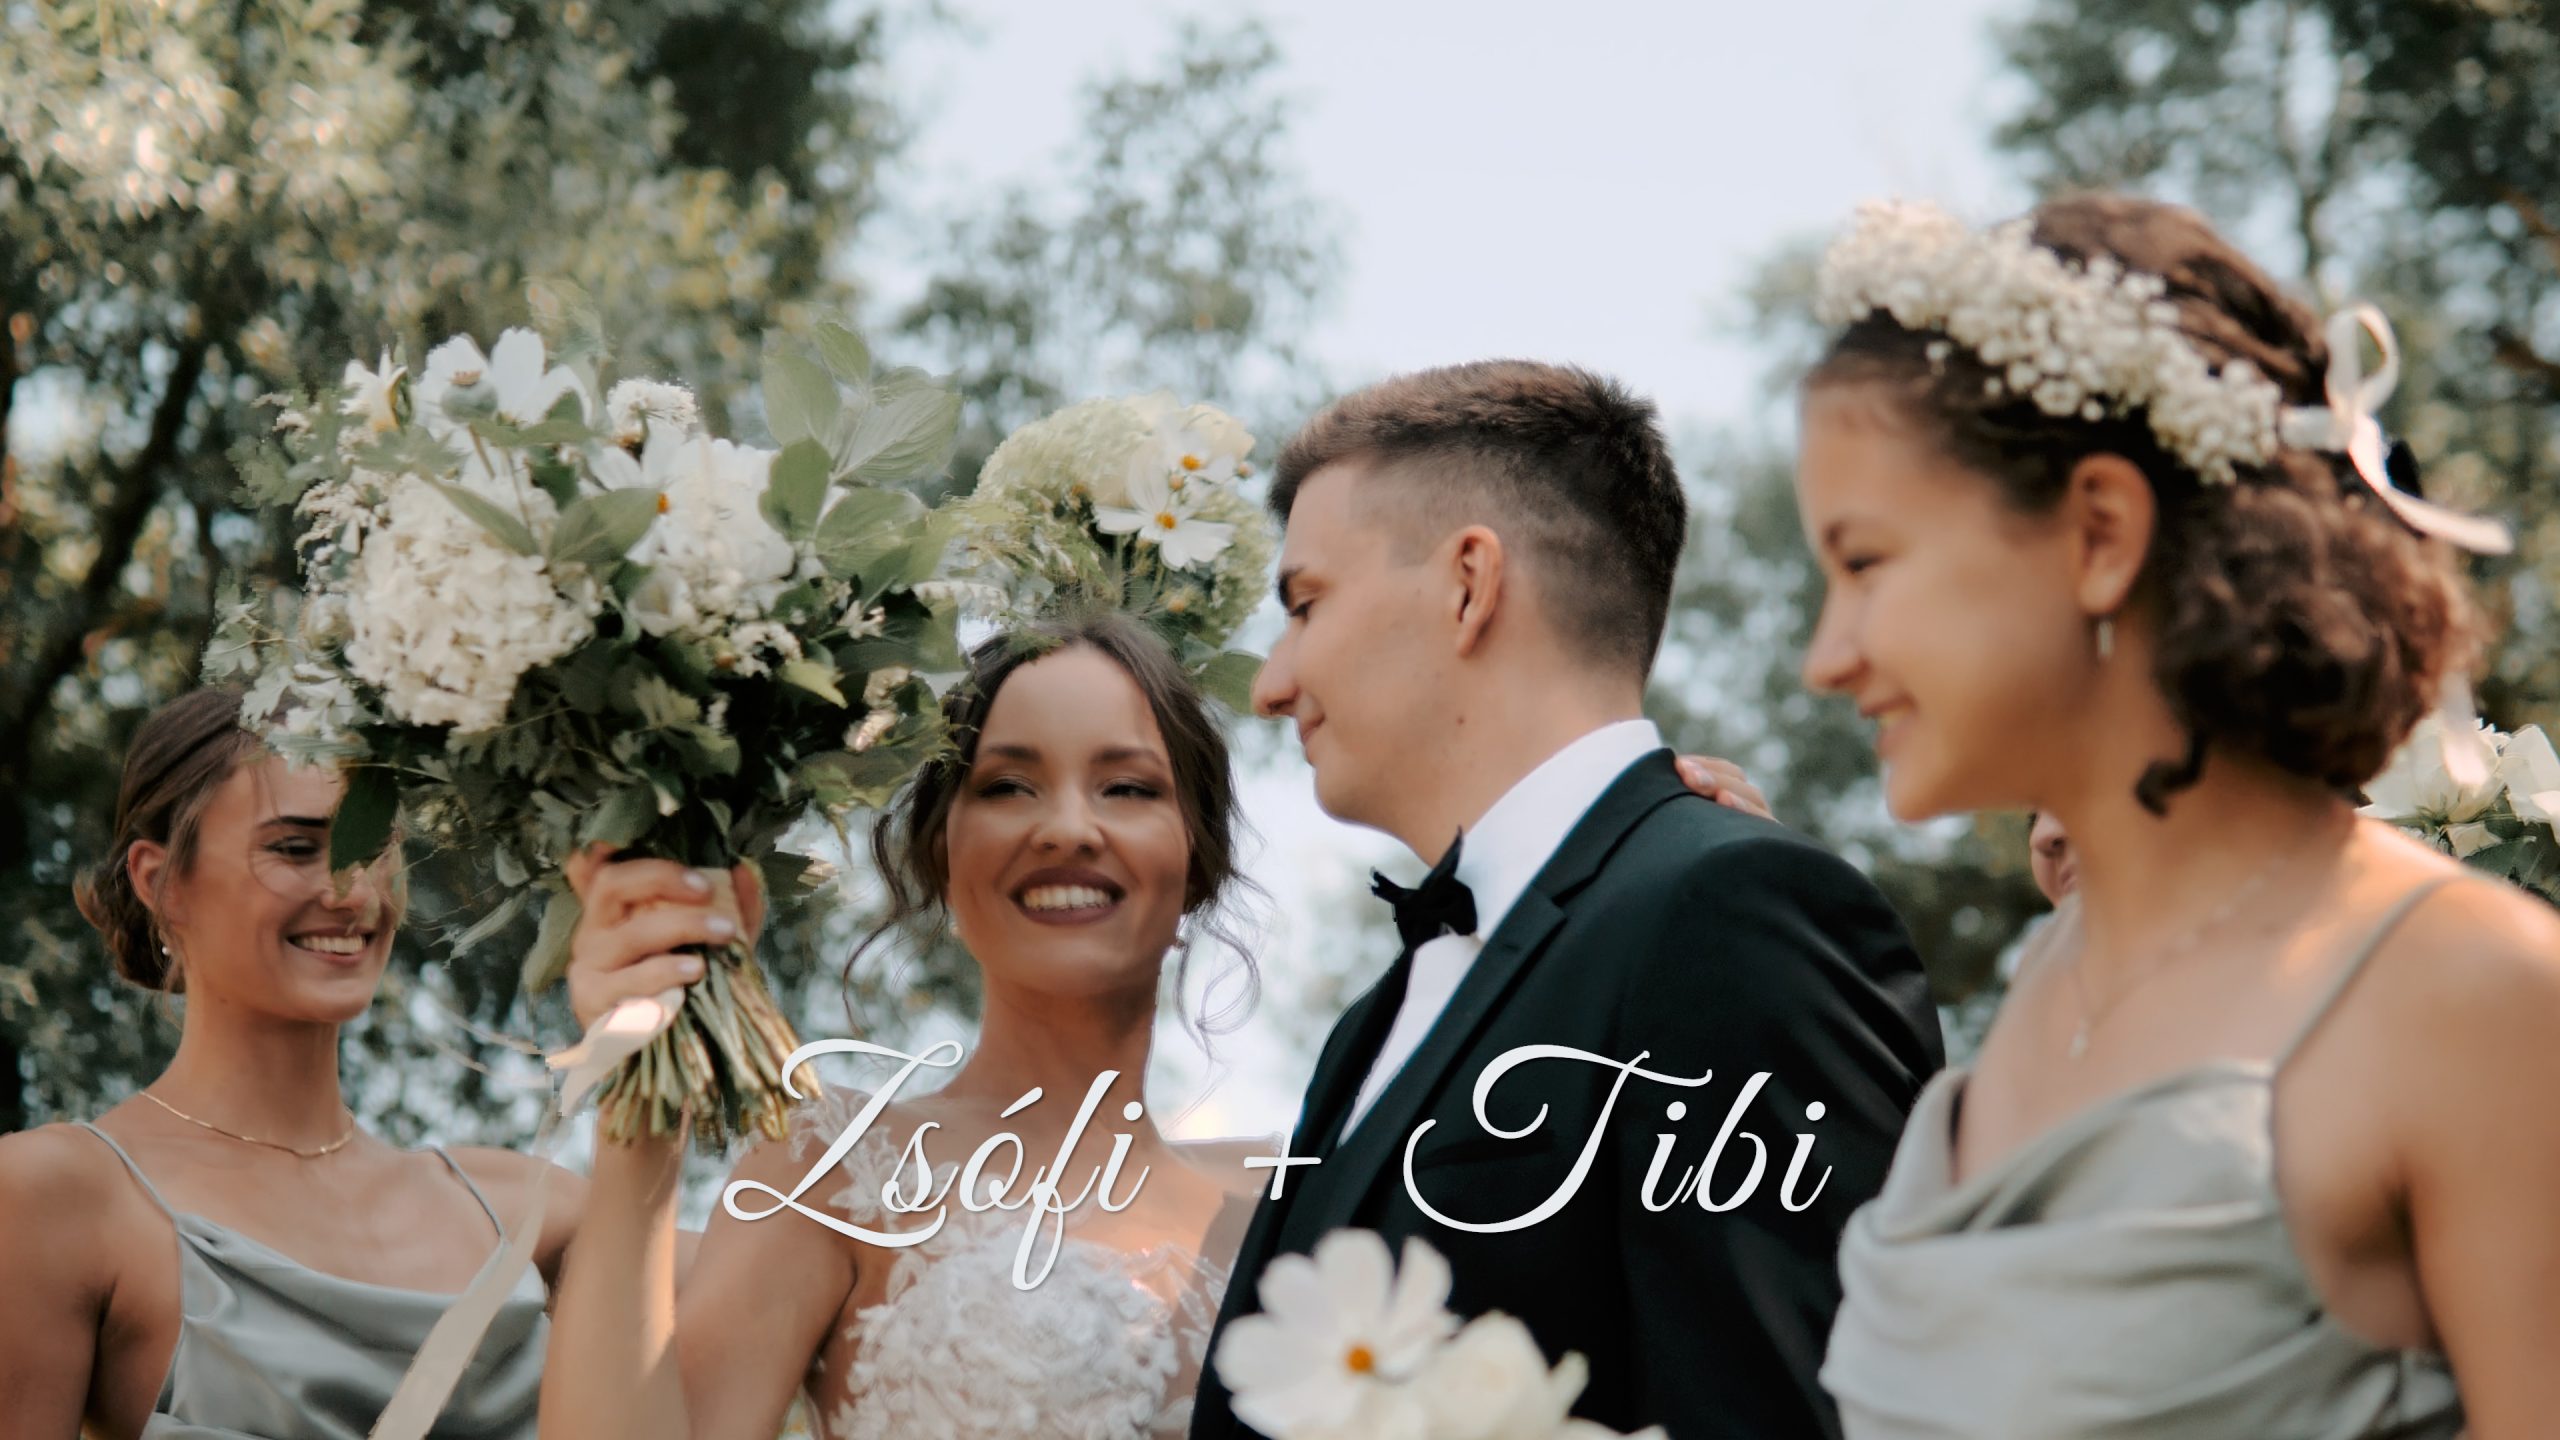 Zsófi és Tibi esküvője